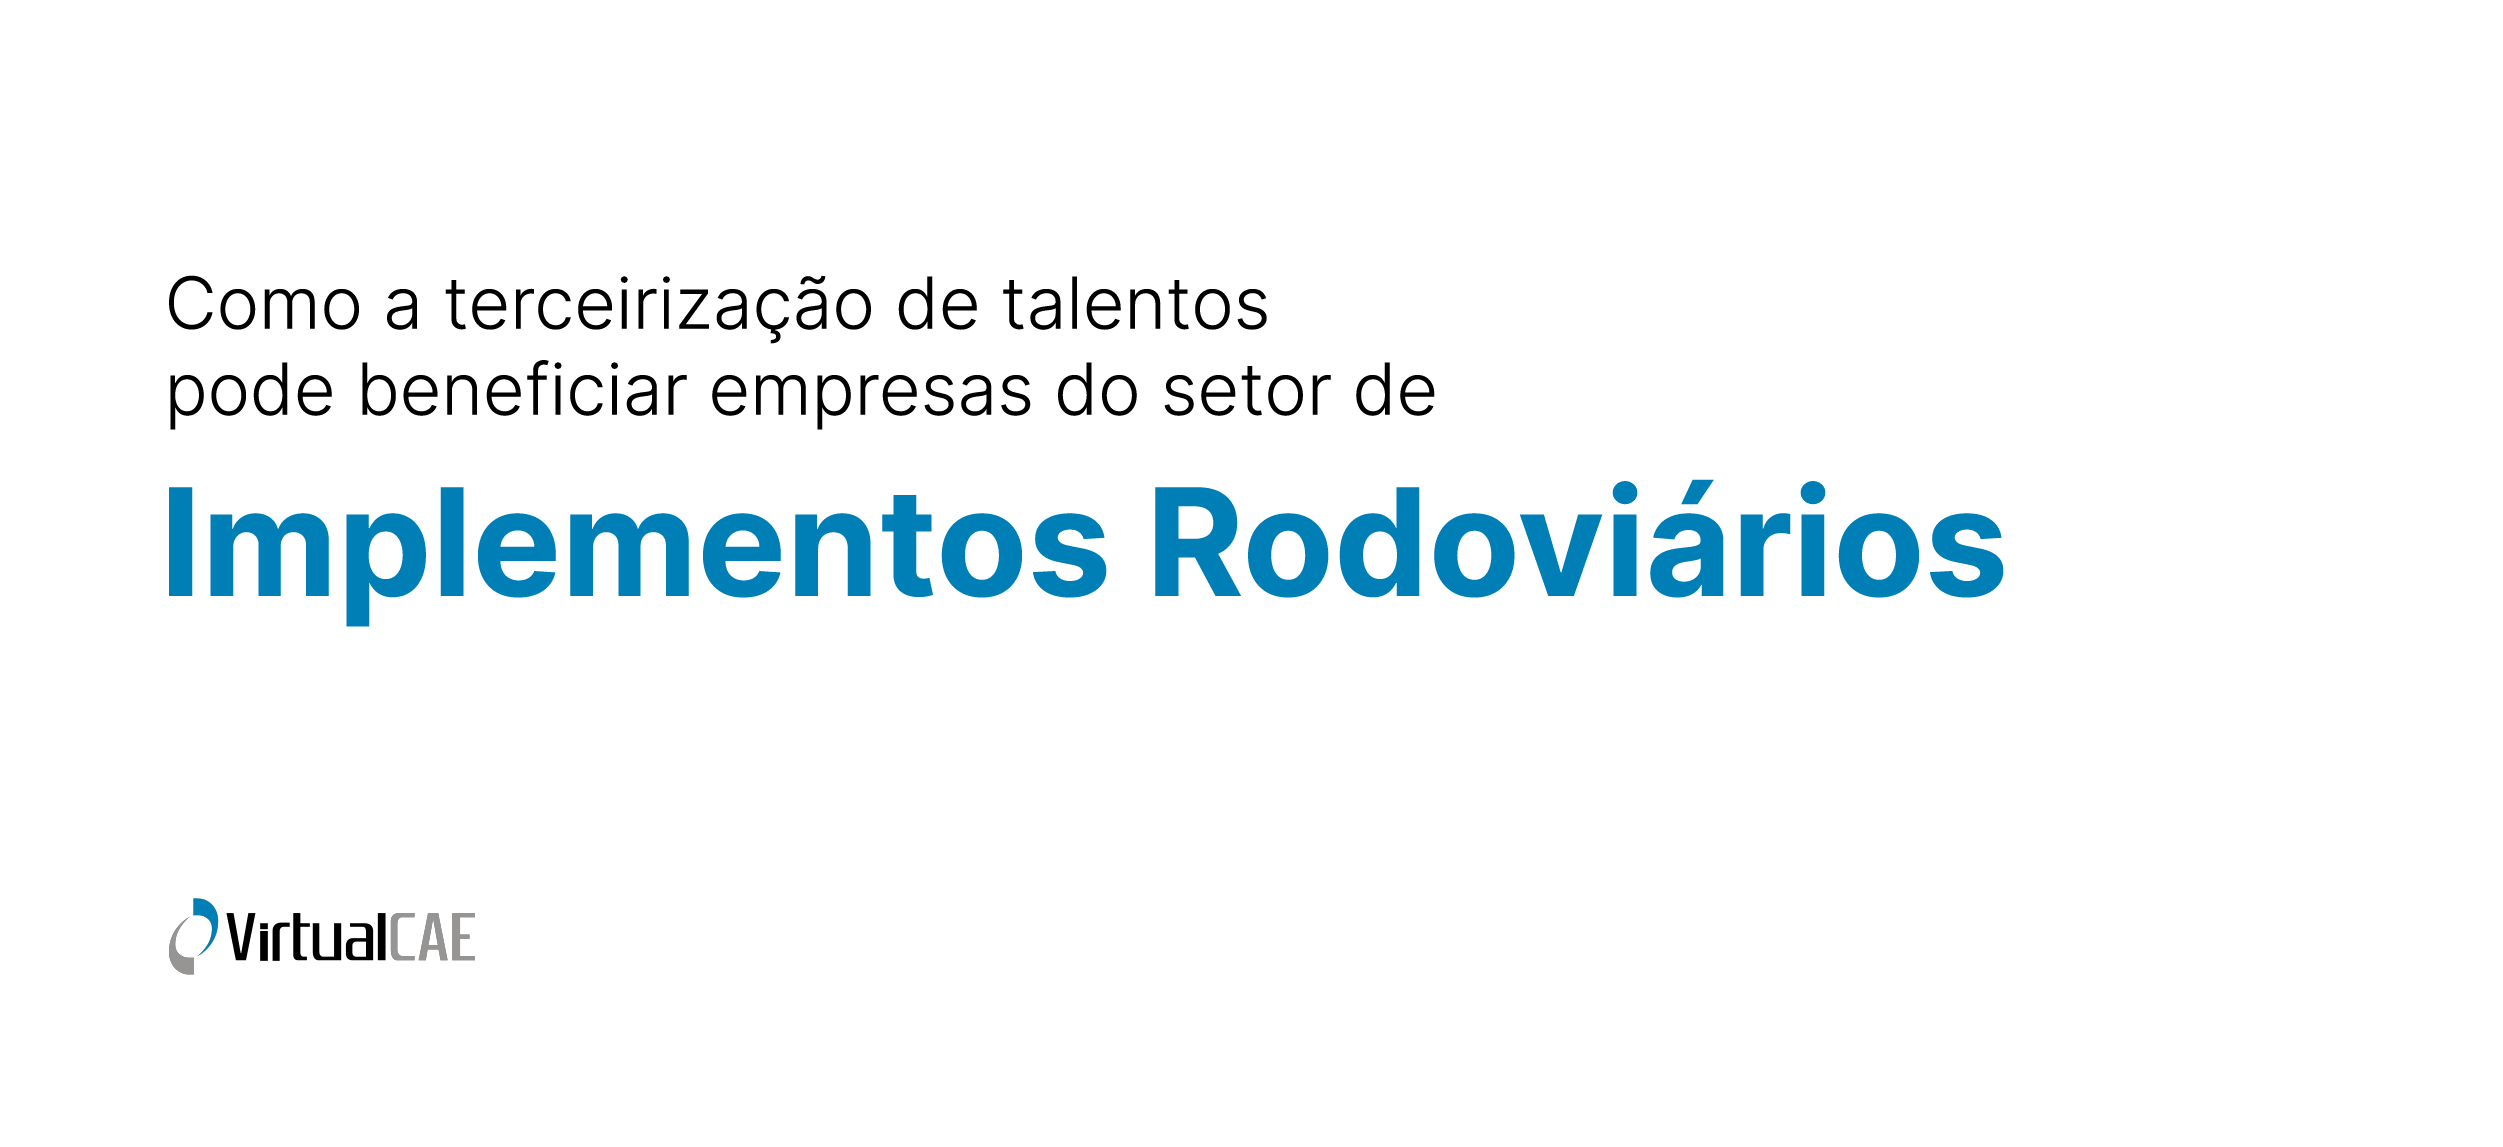 Como a terceirização de talentos pode beneficiar empresas do setor de Implementos Rodoviários